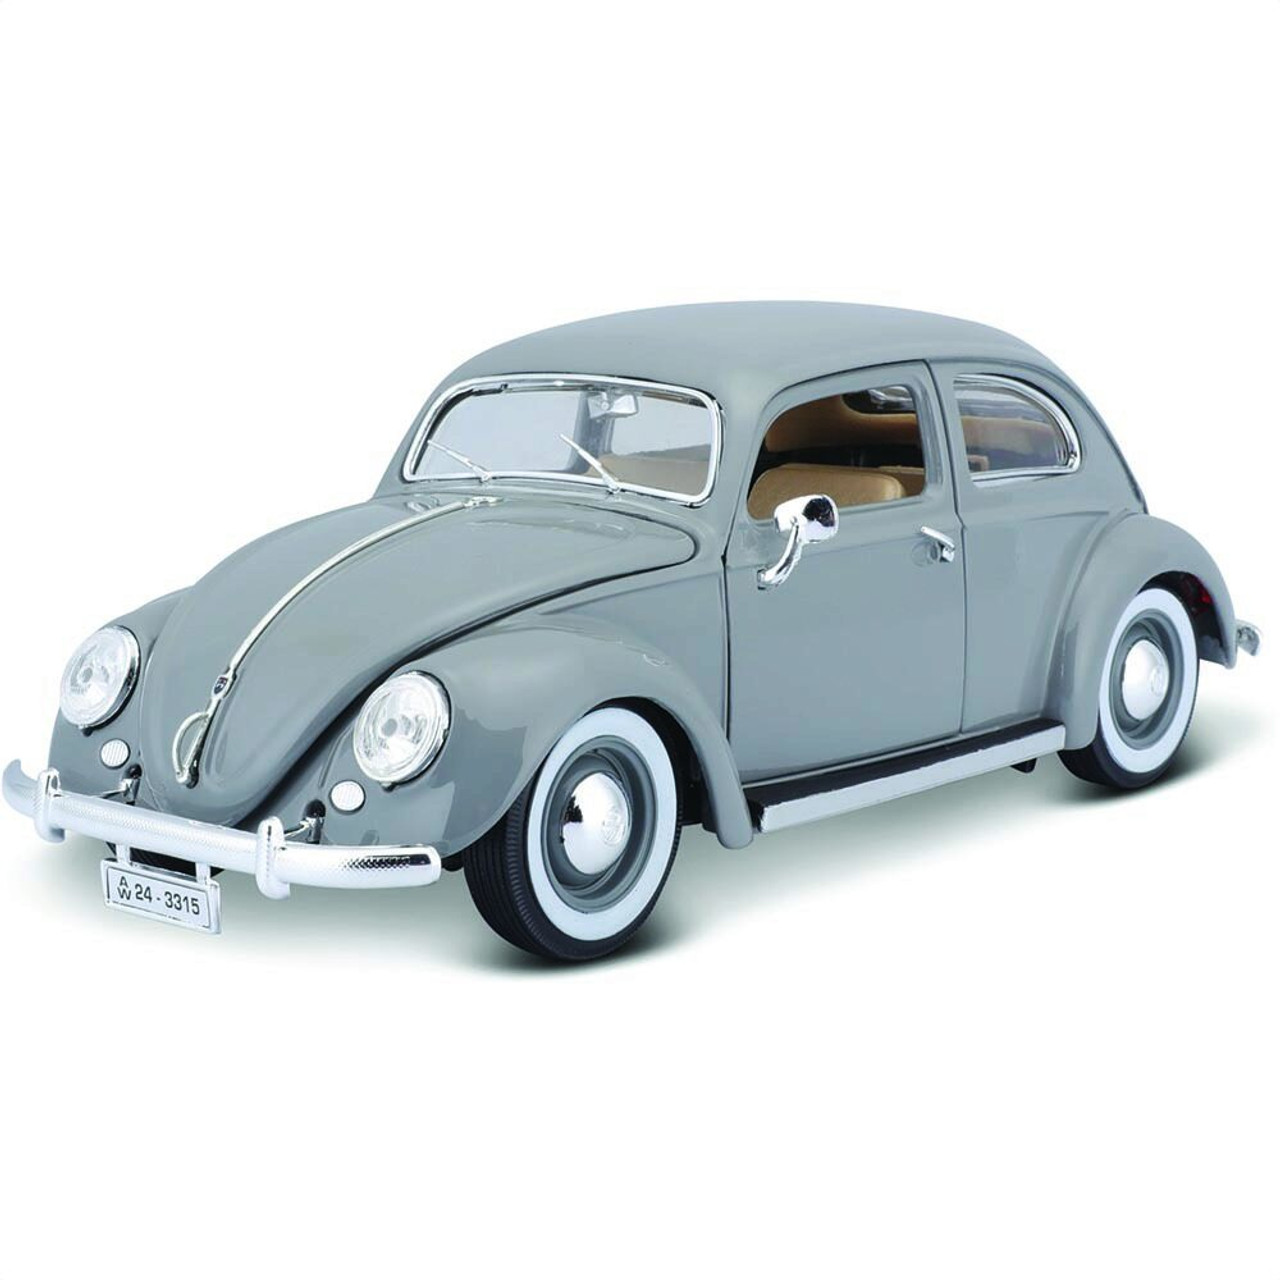 1955 Volkswagen Käfer-Beetle - Gray 1:18 Scale Diecast Replica Model